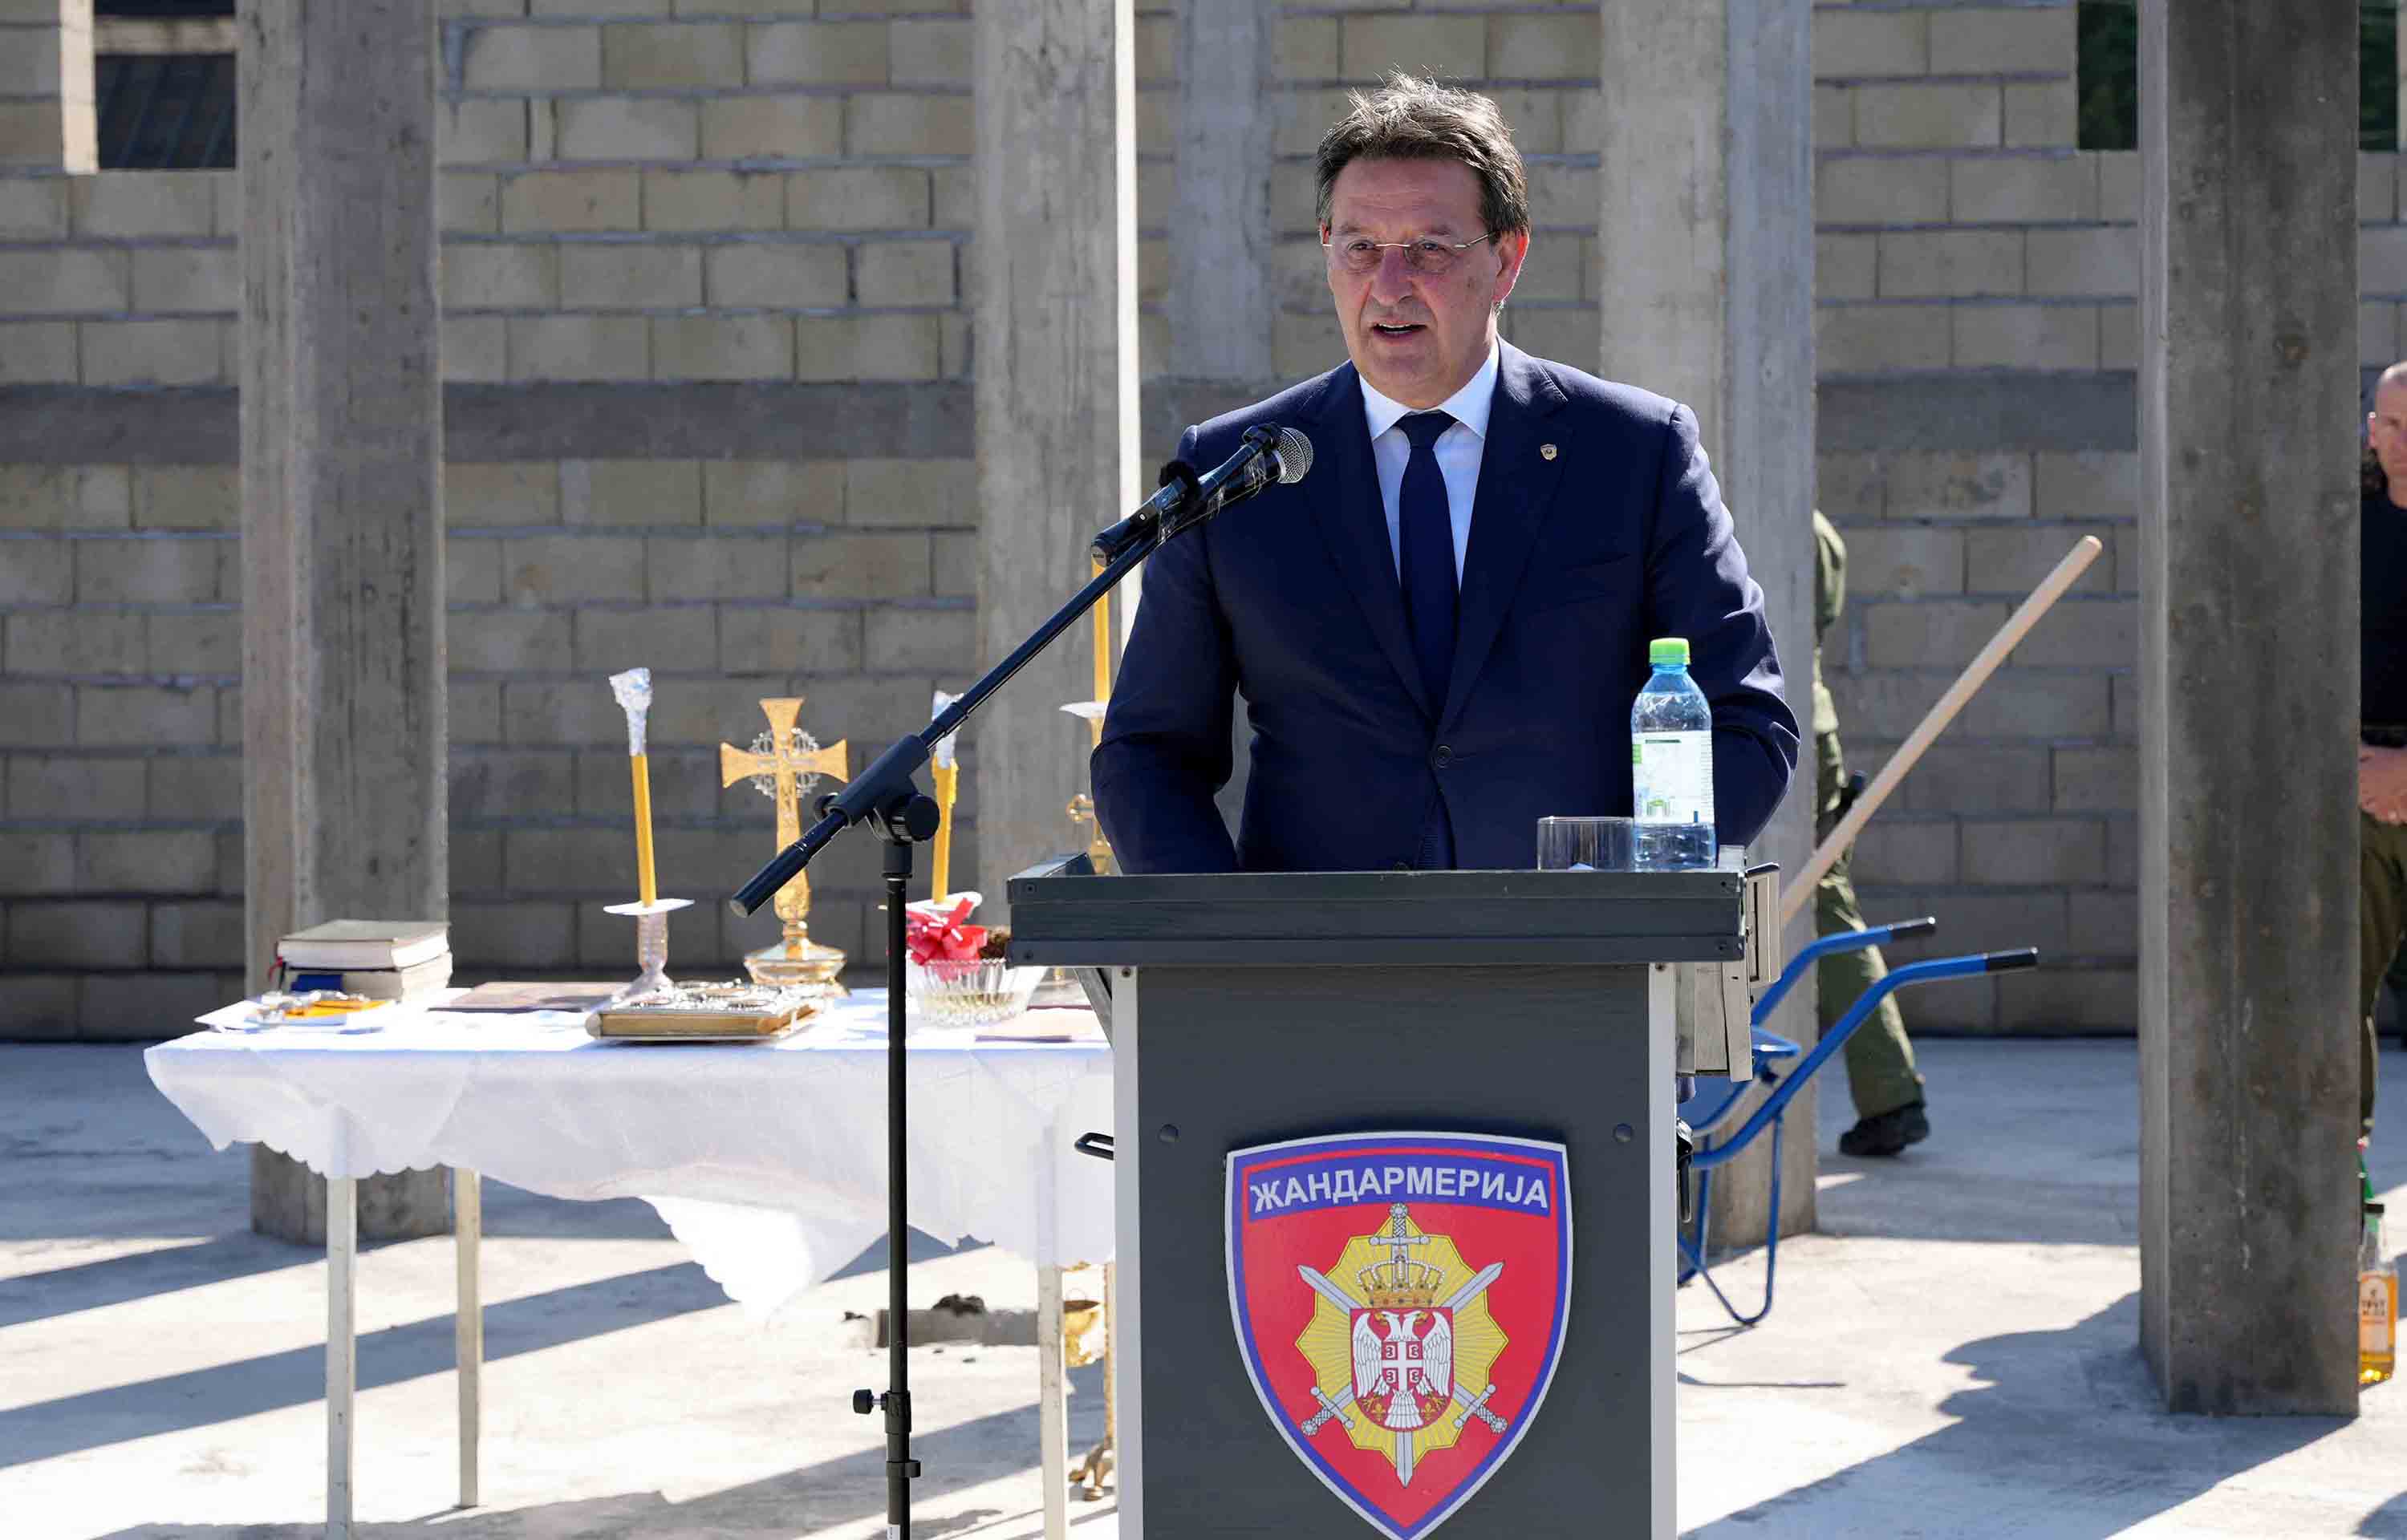 Osvećenje temelјa crkve Sveti knez Lazar i kosovski mučenici u bazi niškog odreda Žandarmerije u Aleksincu